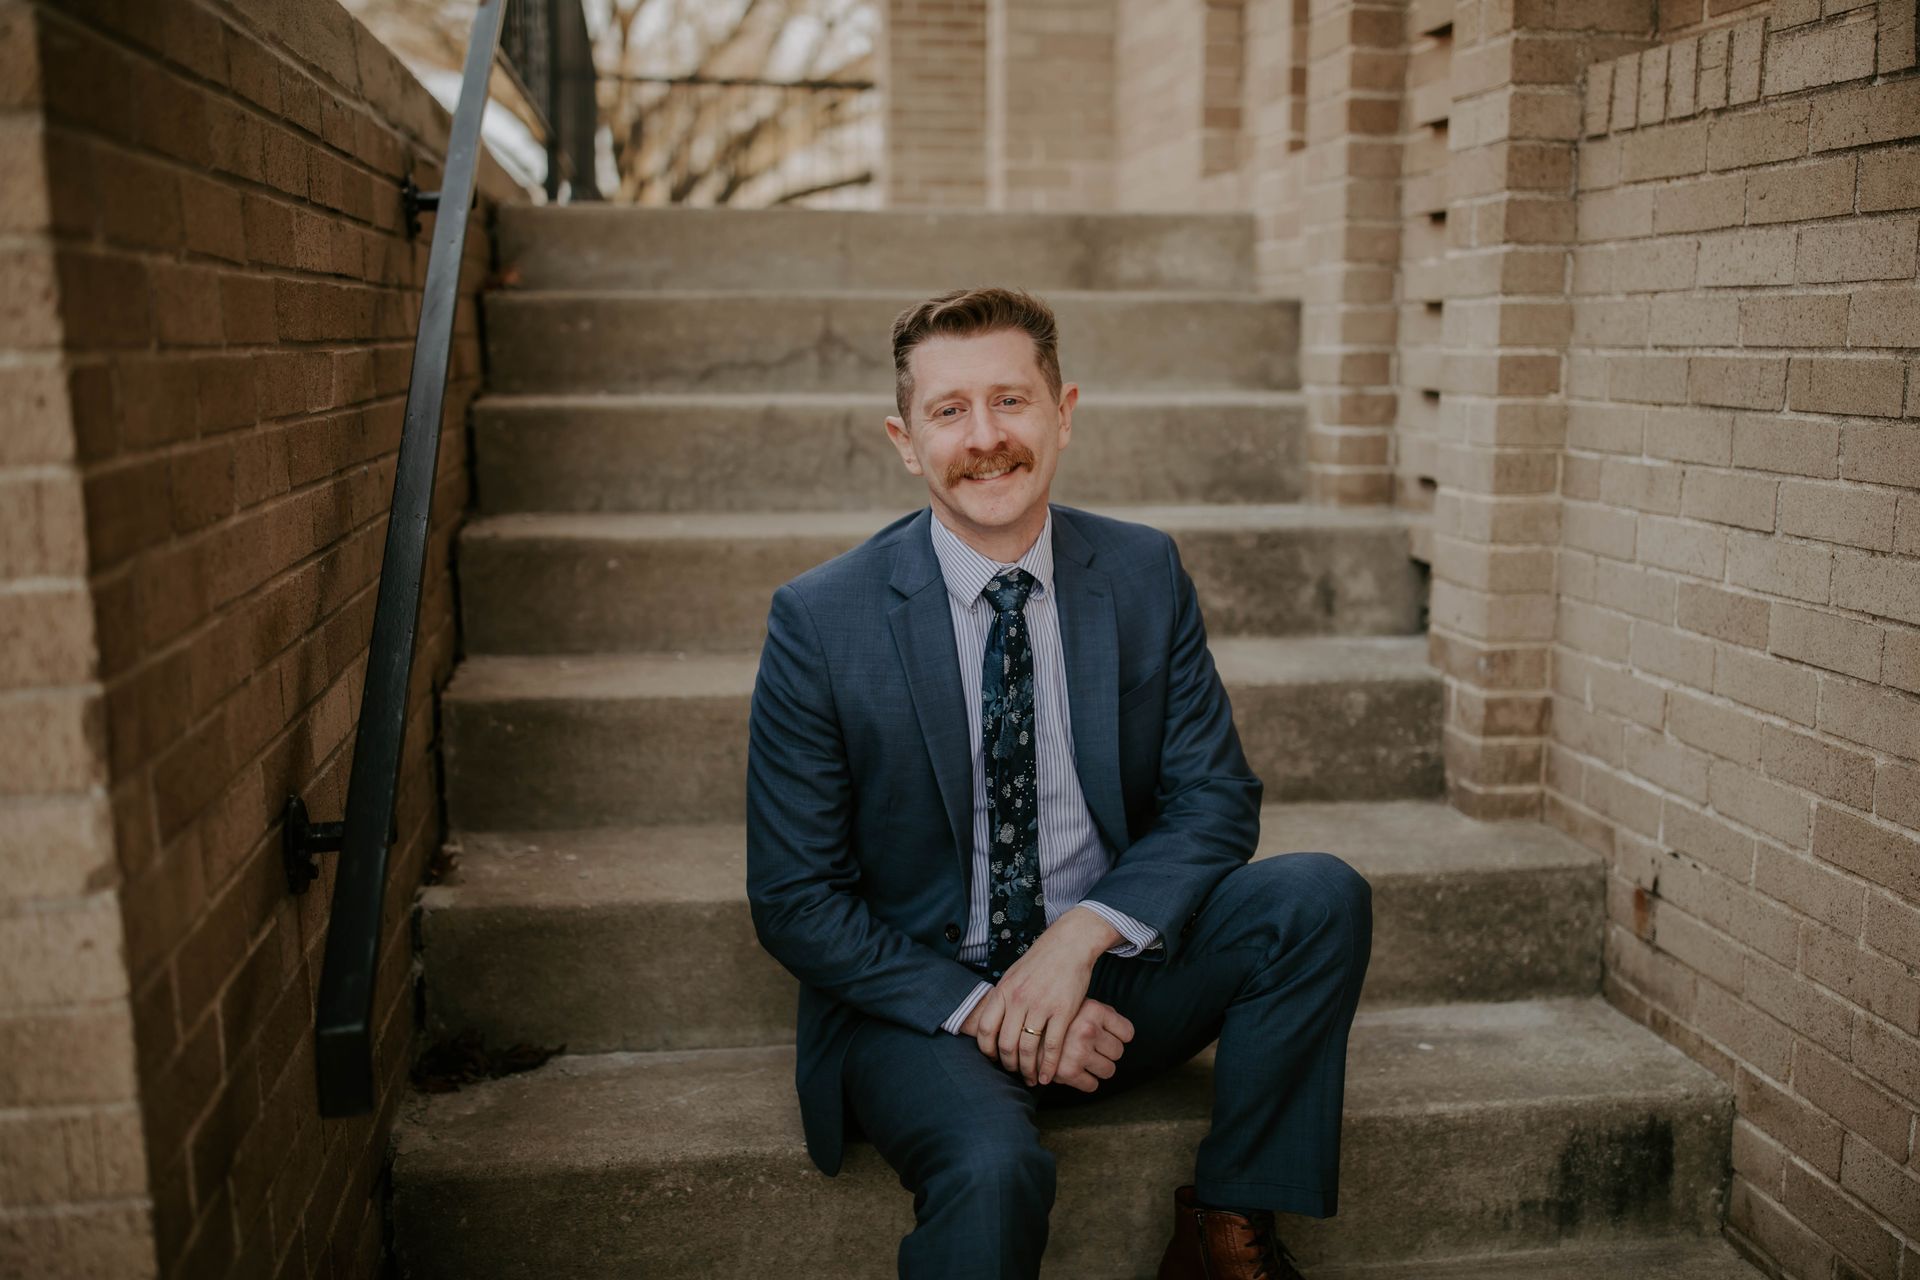 A man in a suit and tie is sitting on a set of stairs.